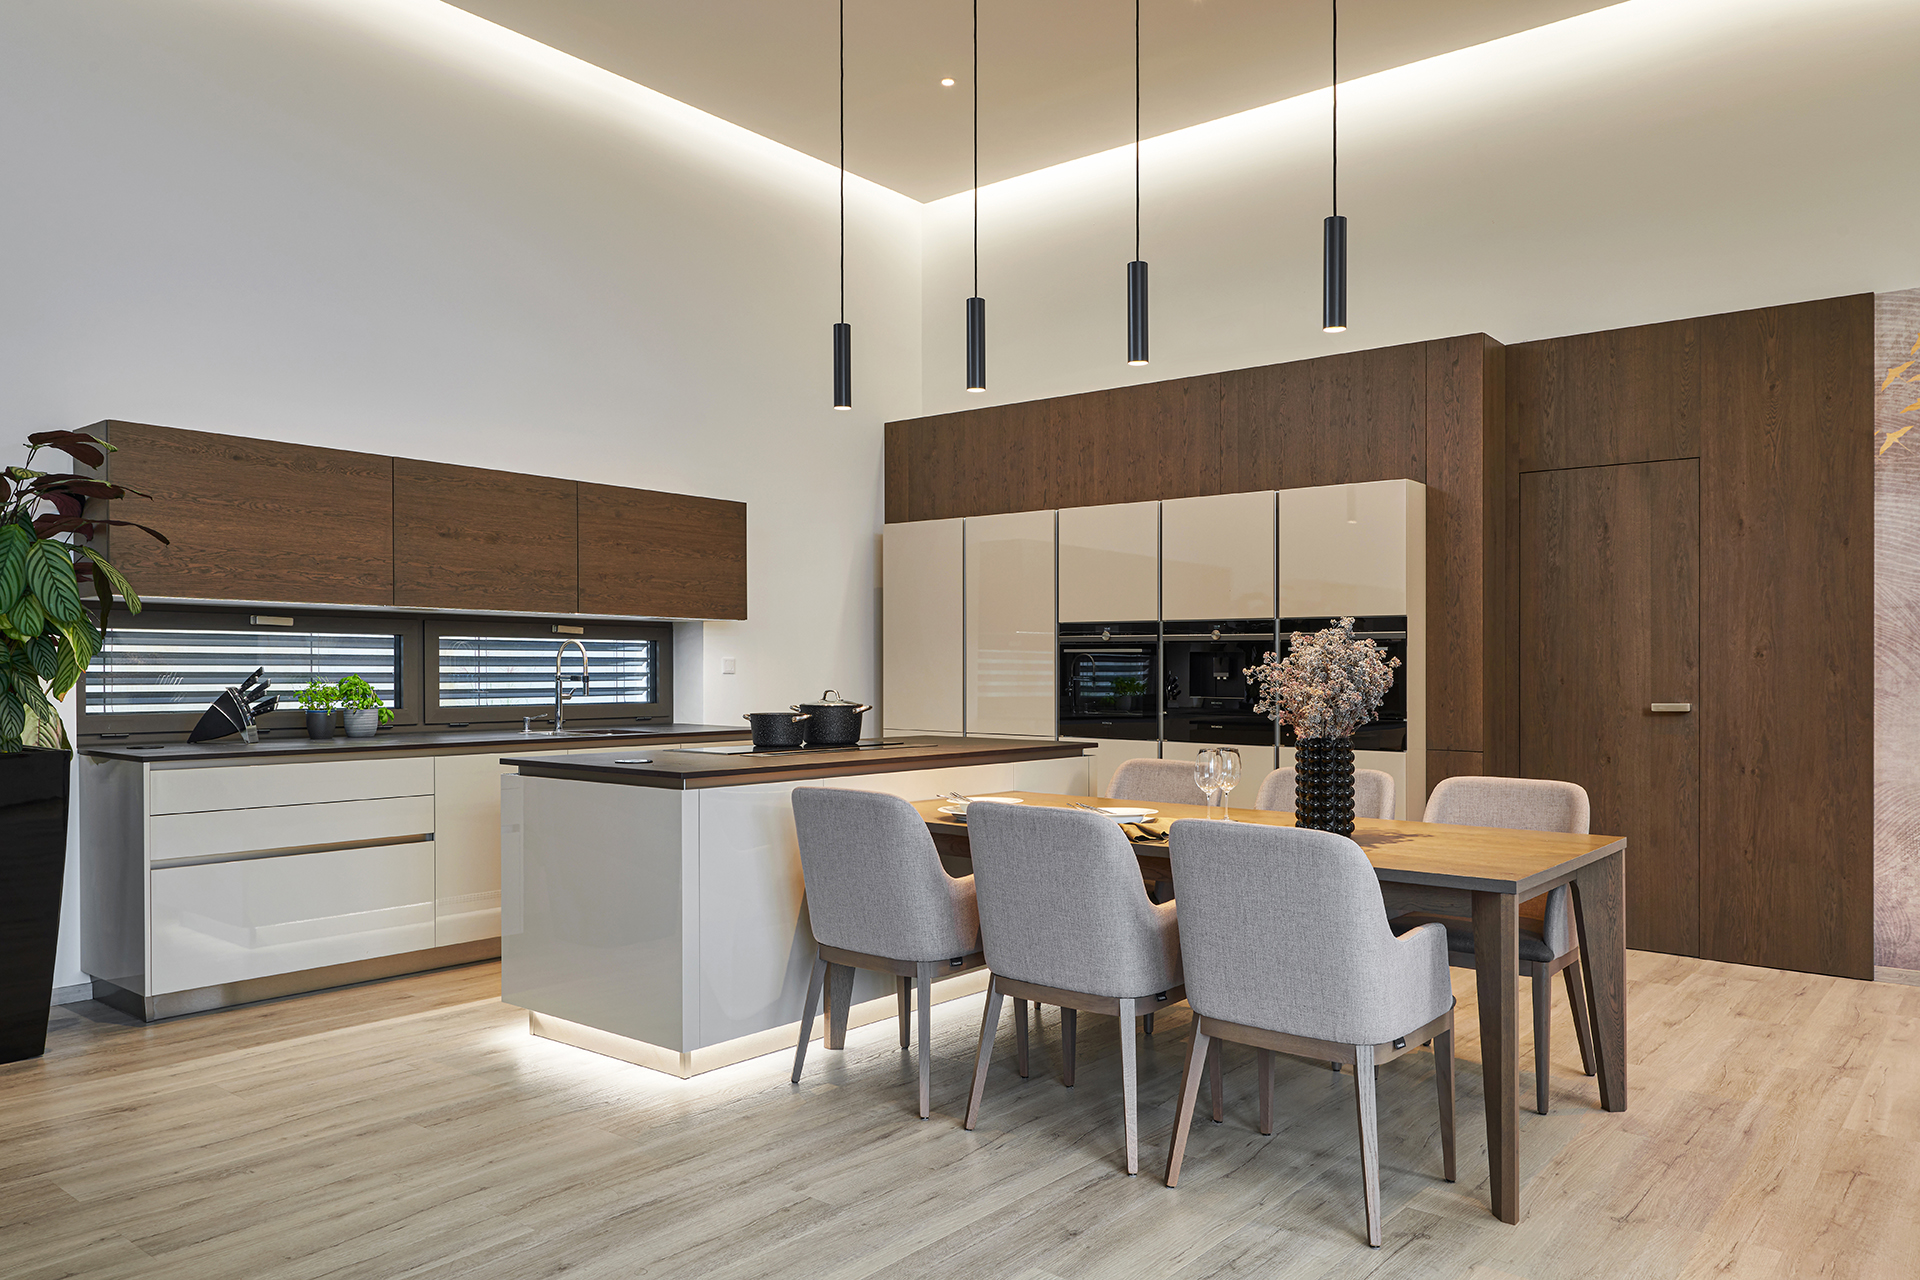 Hanák interior concept kuchyně, obývací pokoj